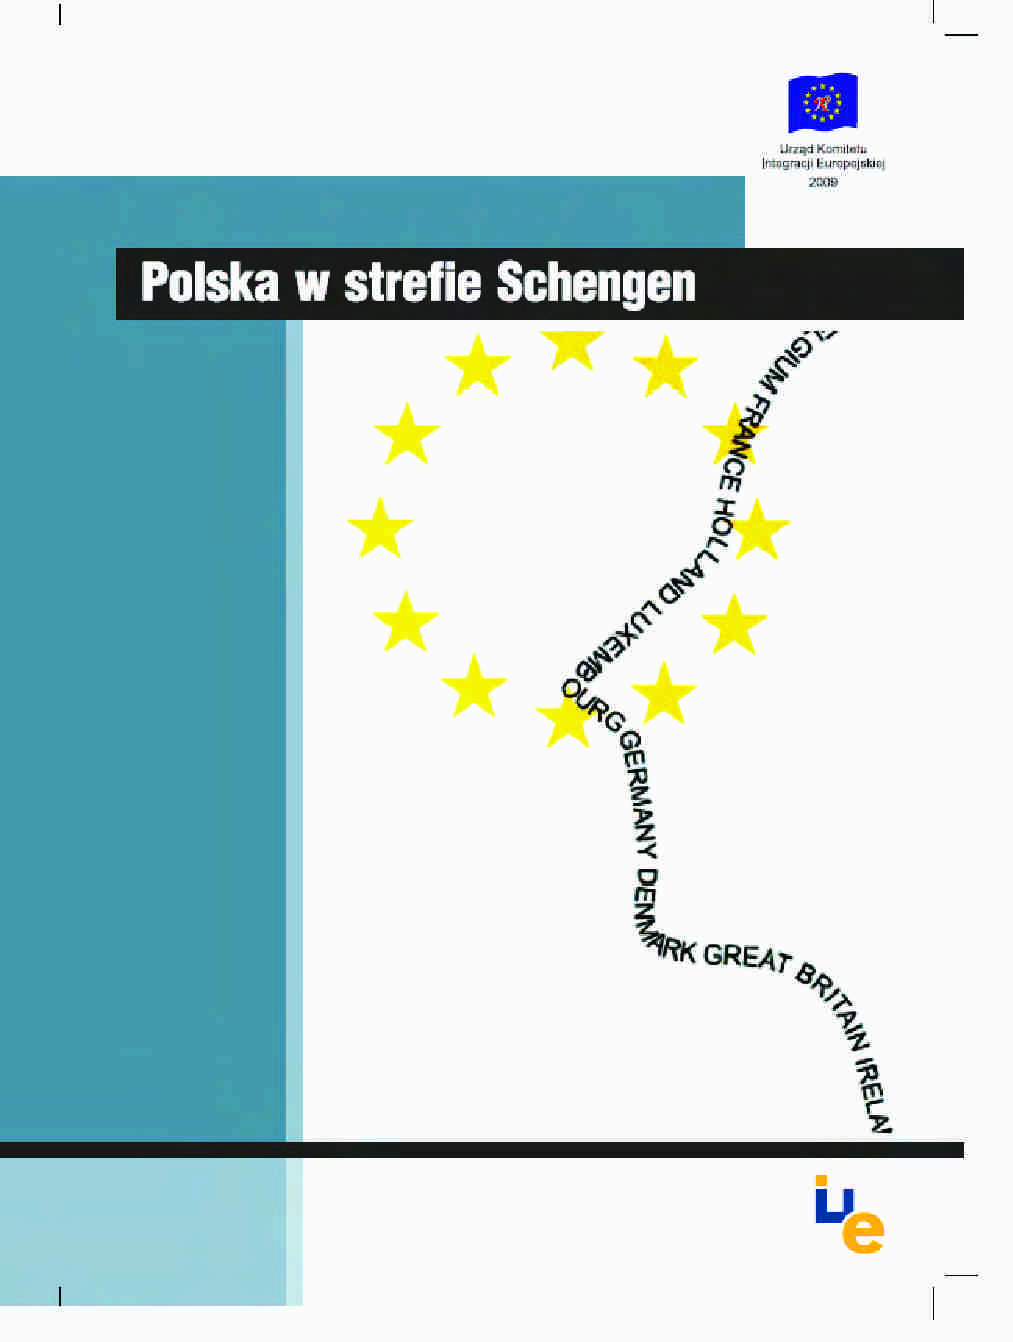  Polska w strefie Schengen - omówienie - strona 1